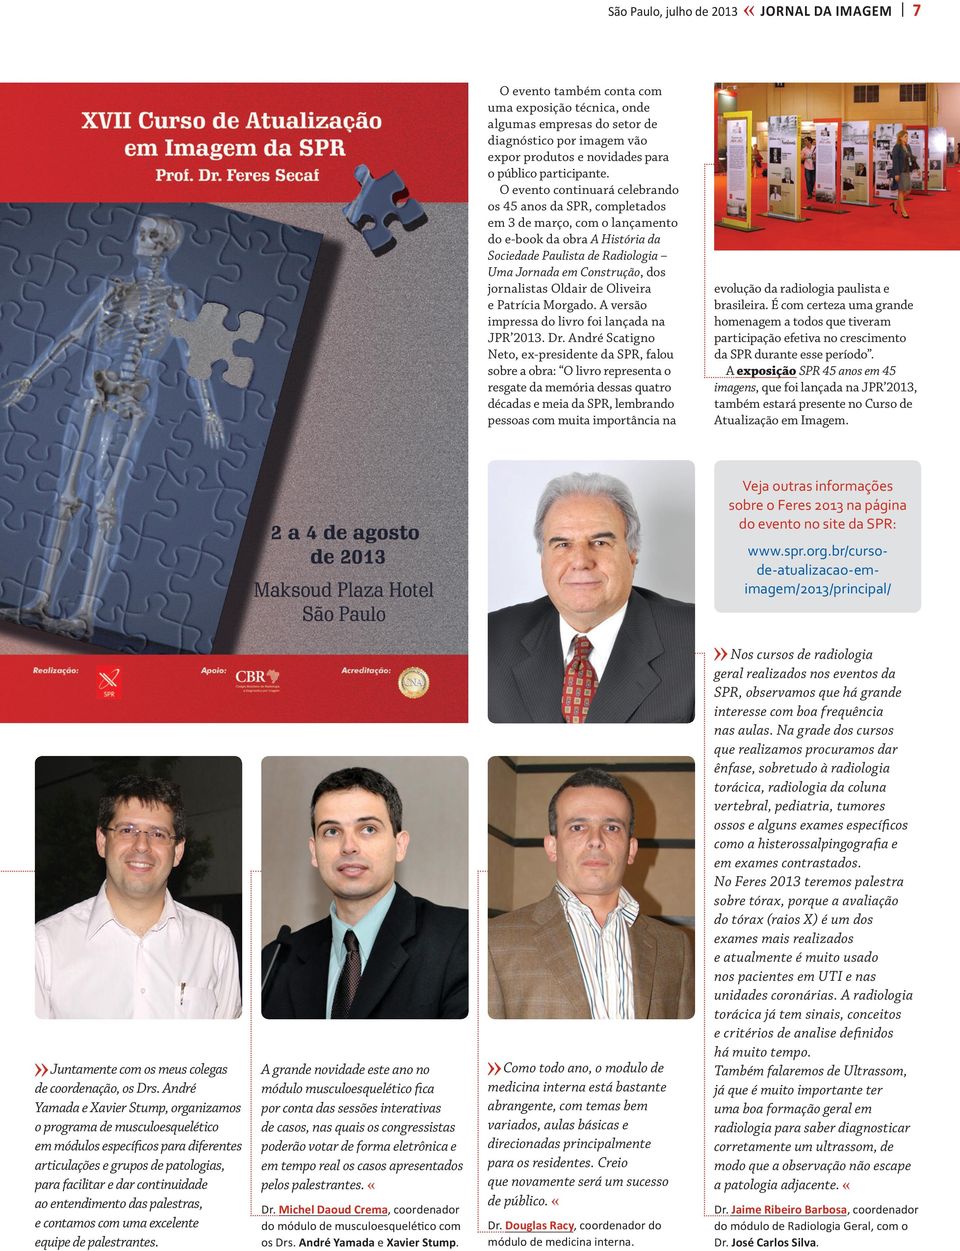 O evento continuará celebrando os 45 anos da SPR, completados em 3 de março, com o lançamento do e-book da obra A História da Sociedade Paulista de Radiologia Uma Jornada em Construção, dos